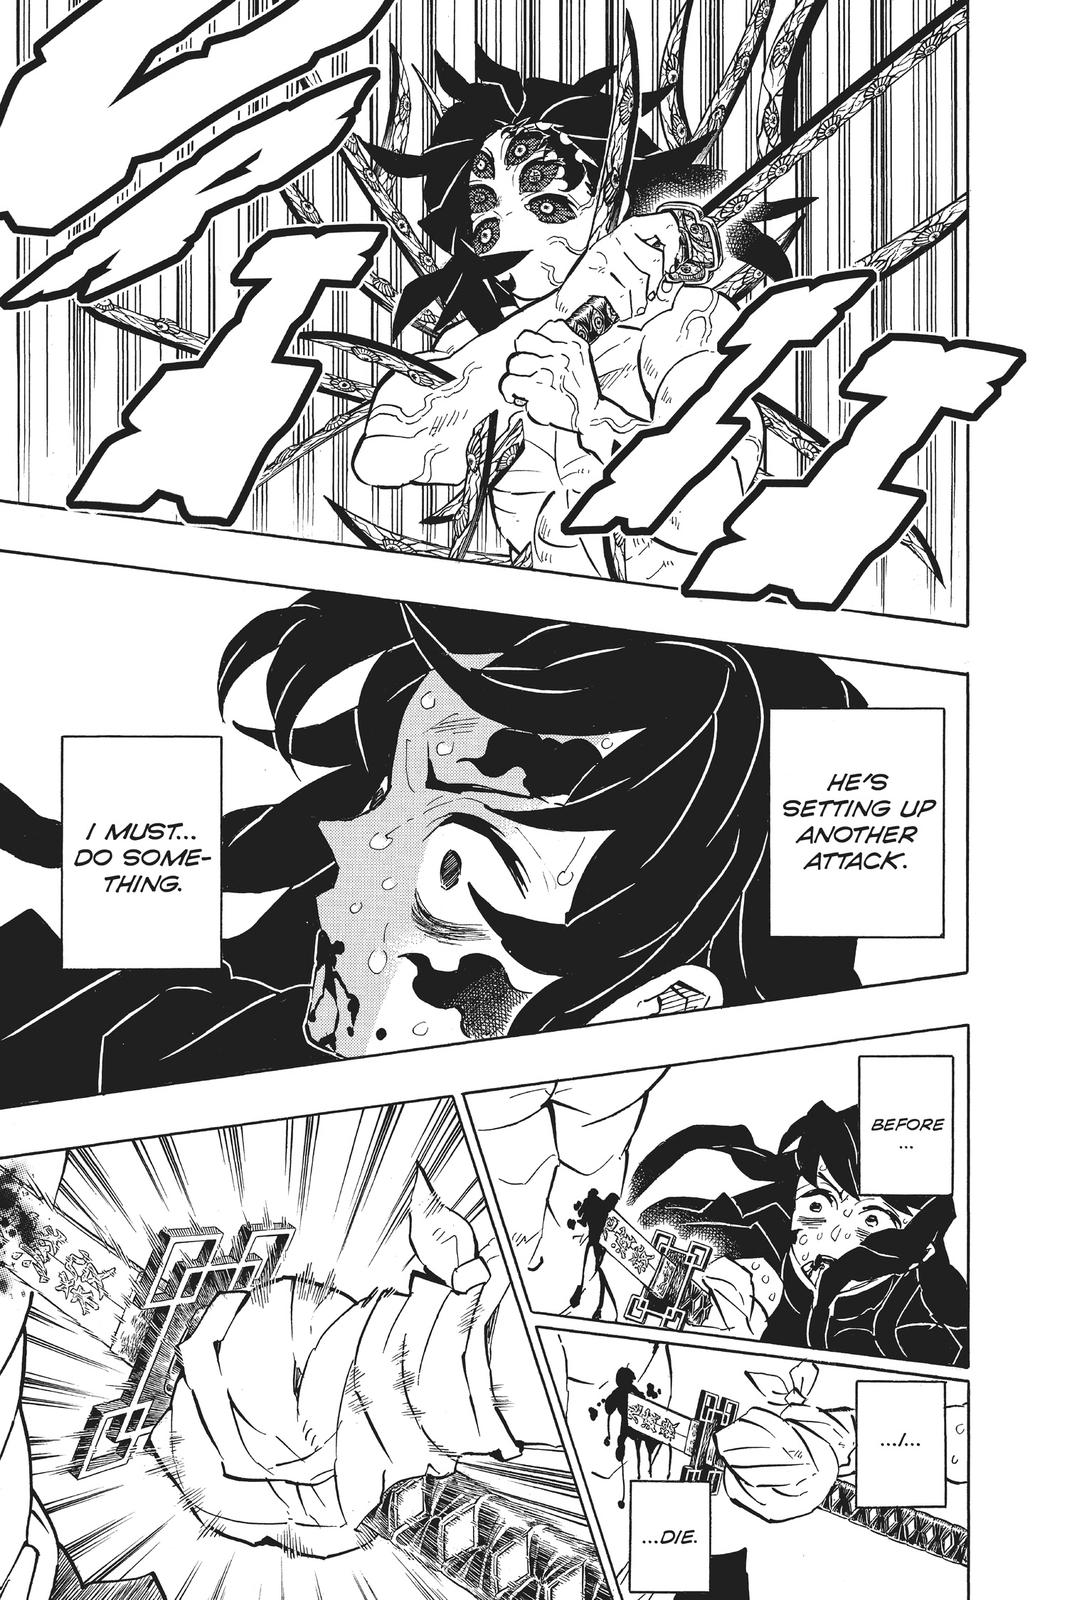 Demon Slayer Manga Manga Chapter - 175 - image 4